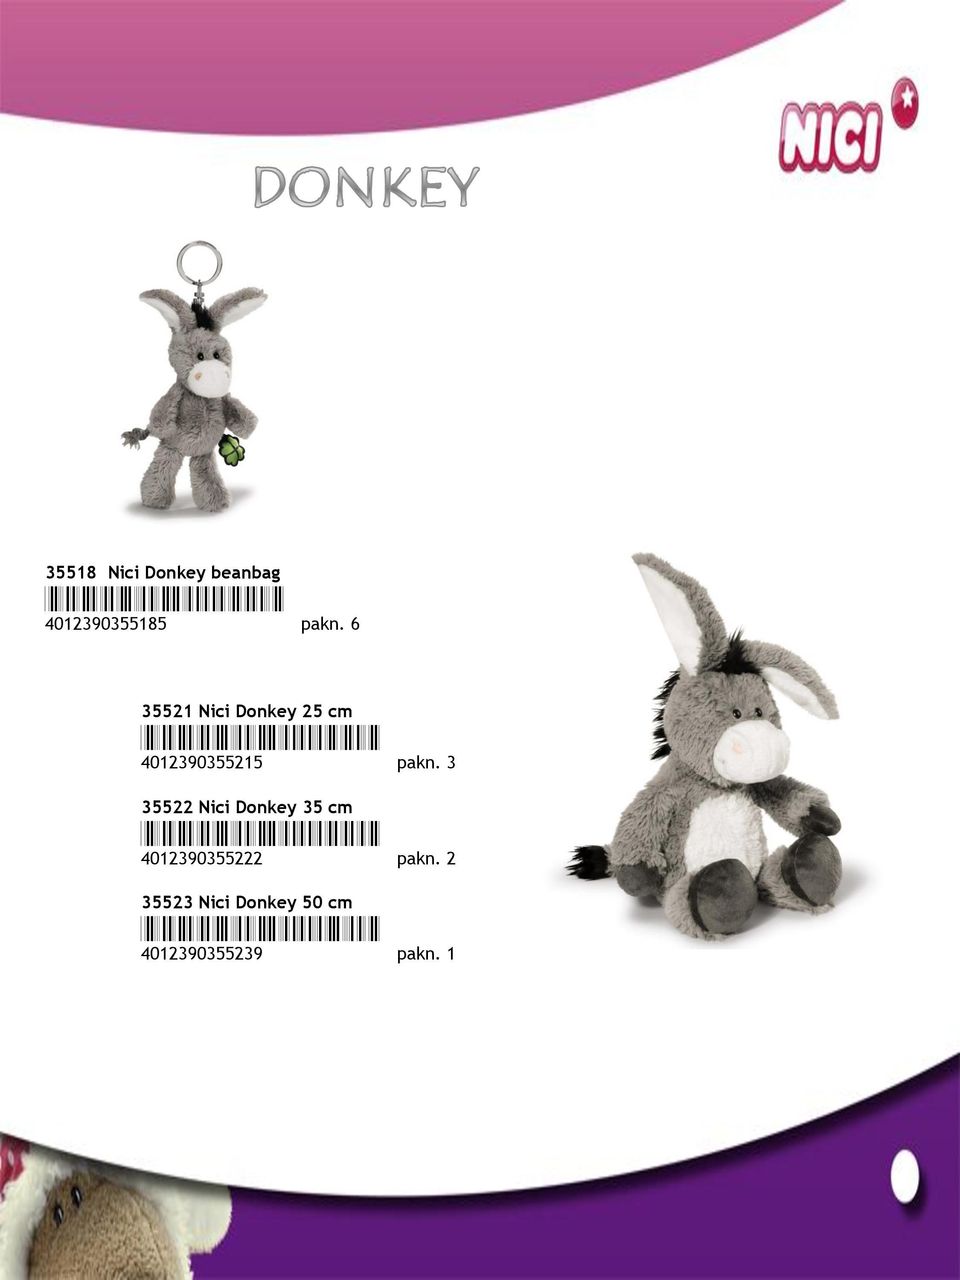 3 35522 Nici Donkey 35 cm *4012390355222* 4012390355222 pakn.